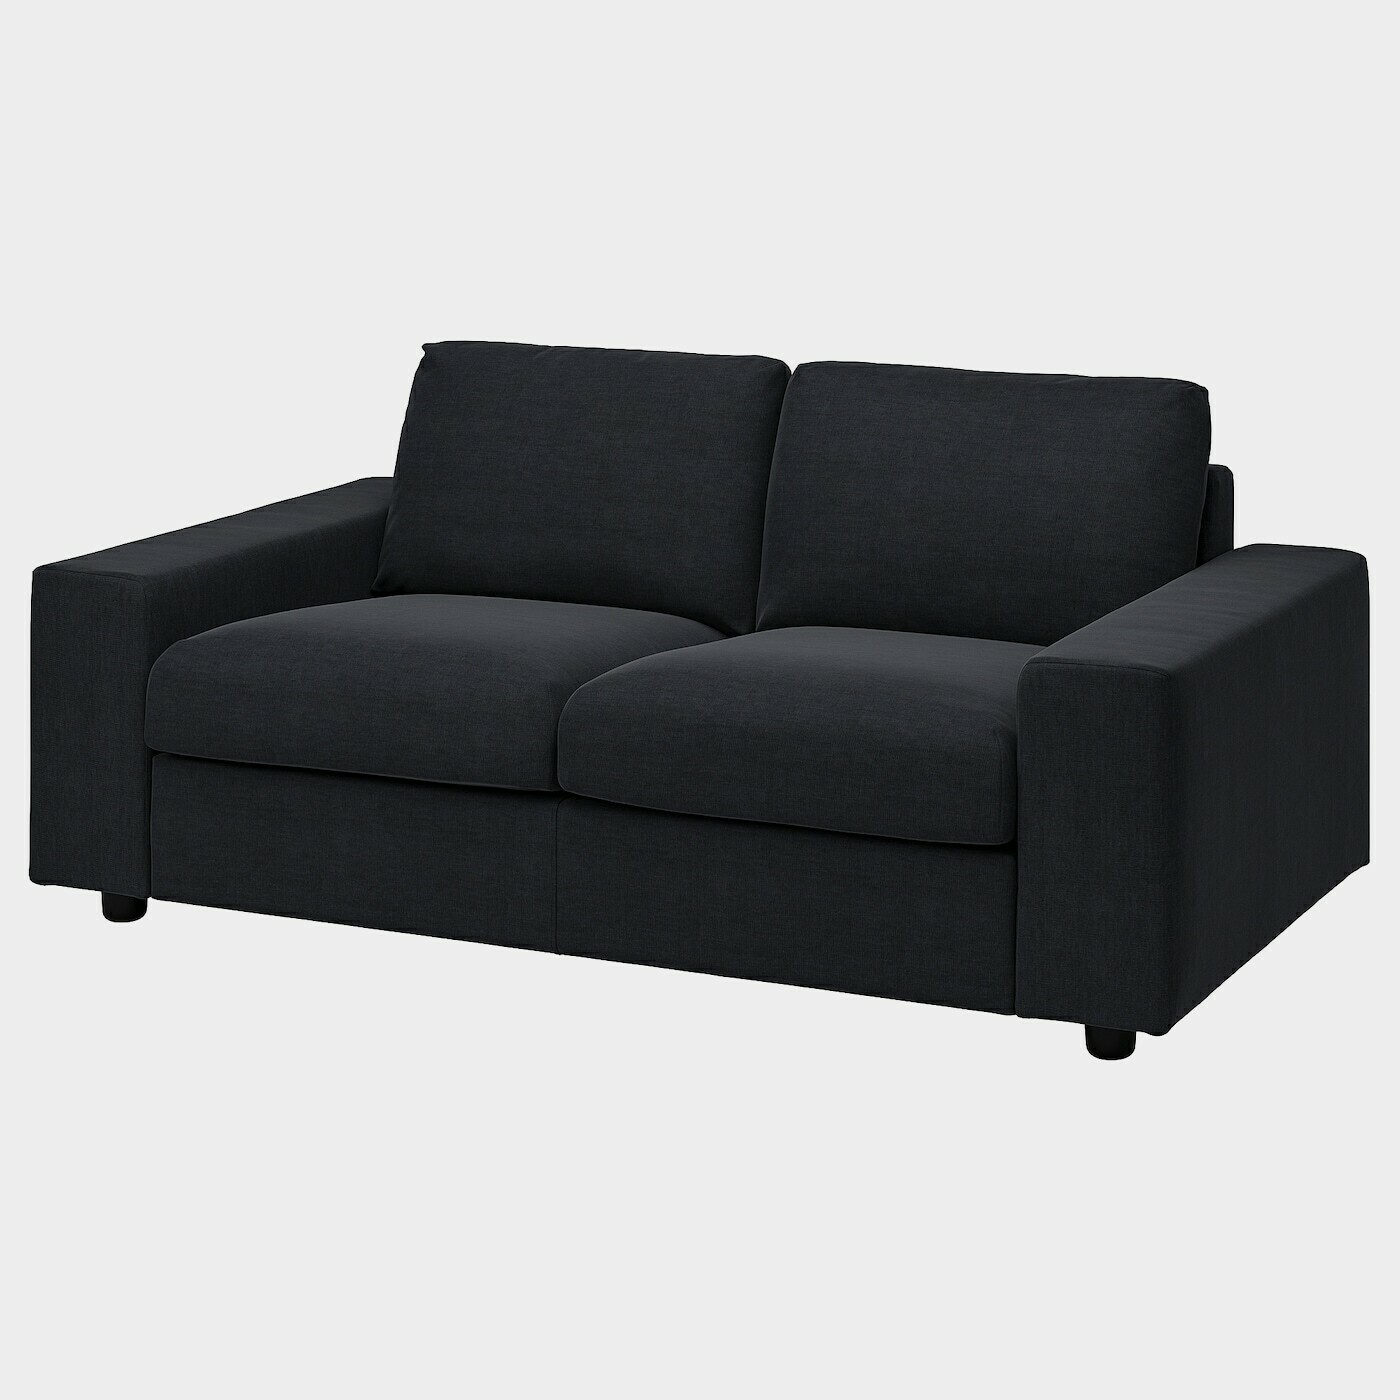 VIMLE Bezug 2er-Sofa  -  - Möbel Ideen für dein Zuhause von Home Trends. Möbel Trends von Social Media Influencer für dein Skandi Zuhause.